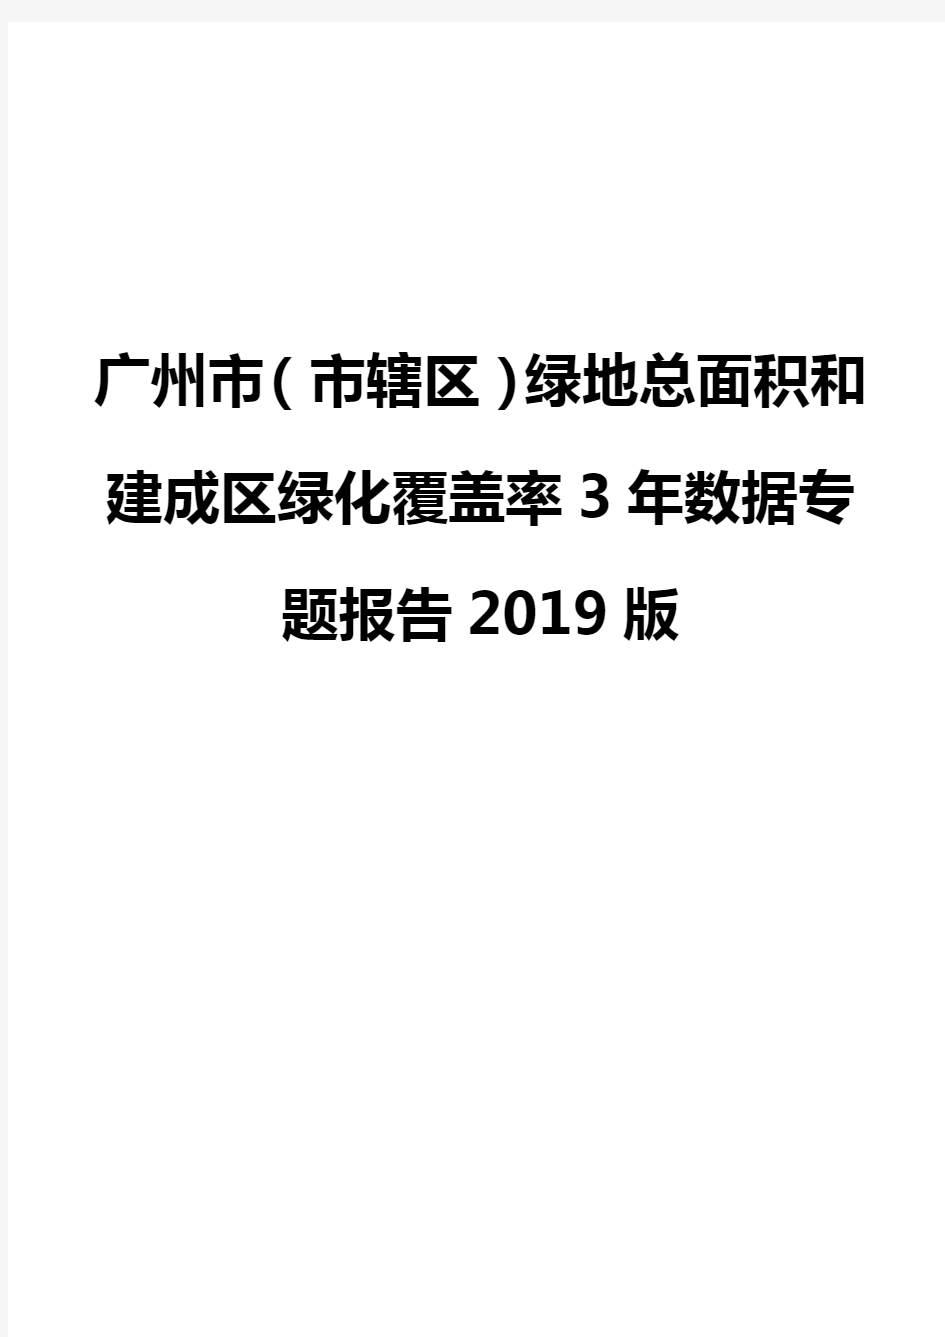 广州市(市辖区)绿地总面积和建成区绿化覆盖率3年数据专题报告2019版